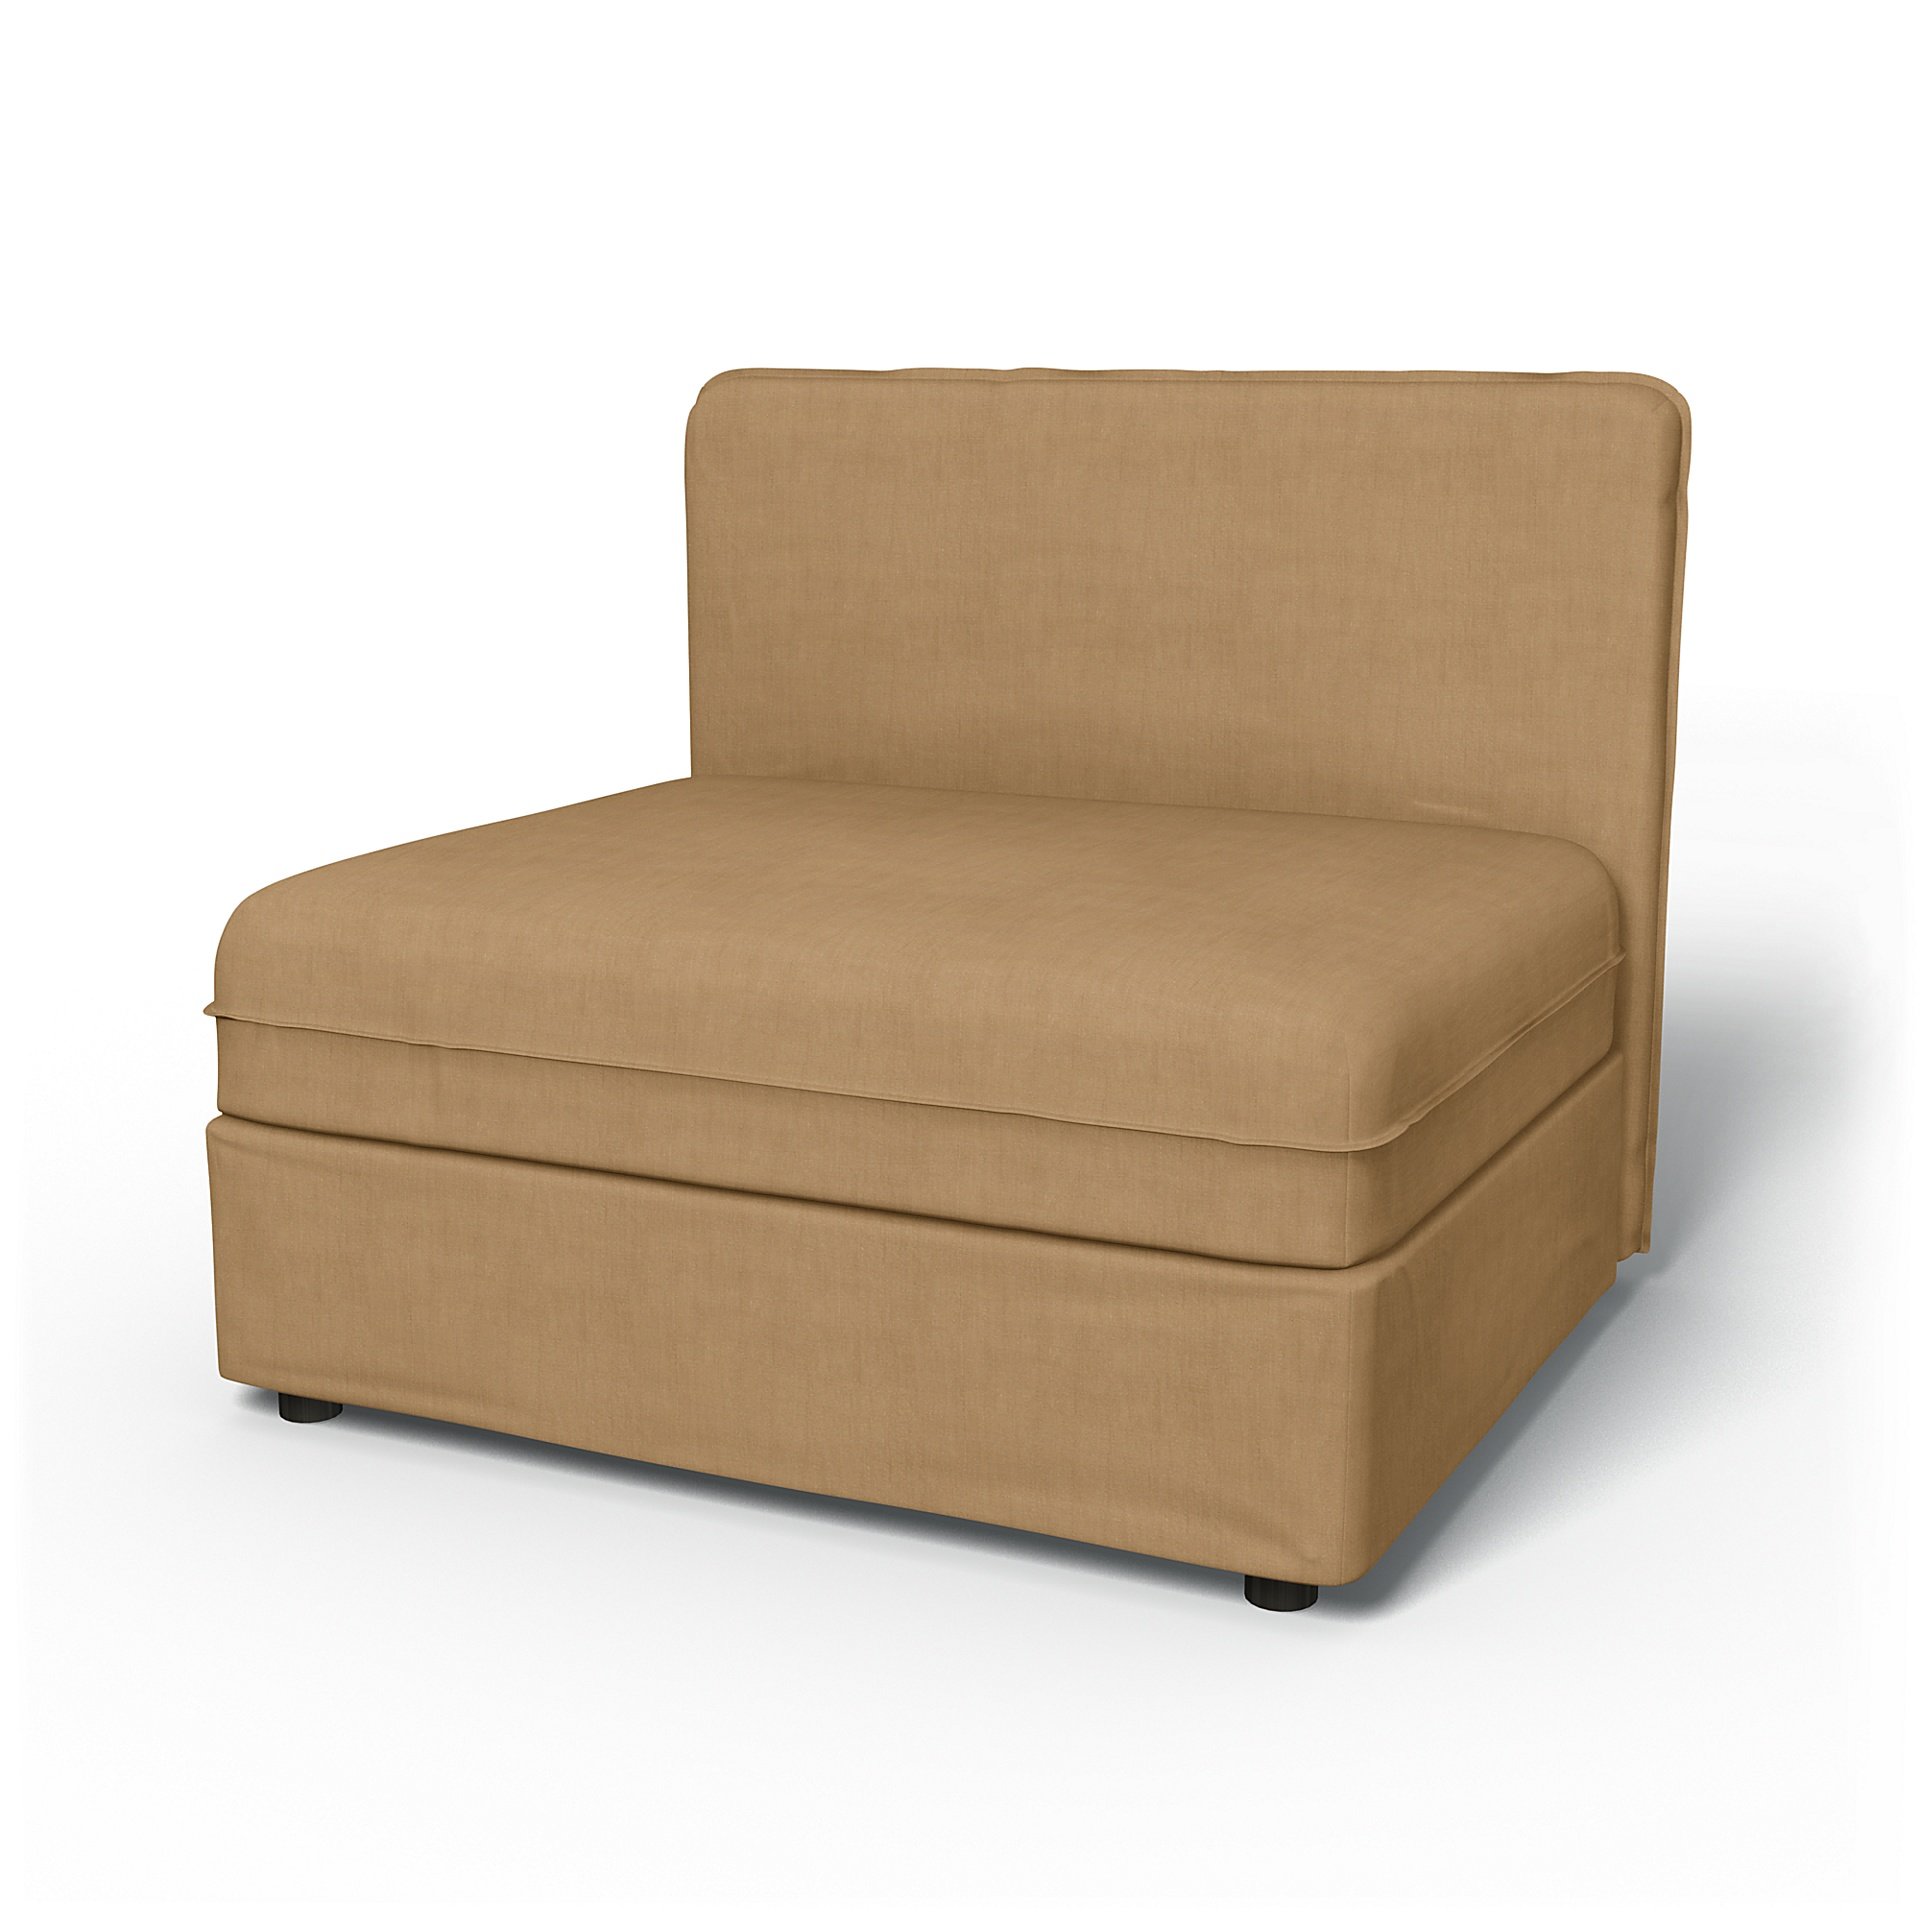 IKEA - Vallentuna Seat Module with Low Back Cover 100x80cm 39x32in, Hemp, Linen - Bemz